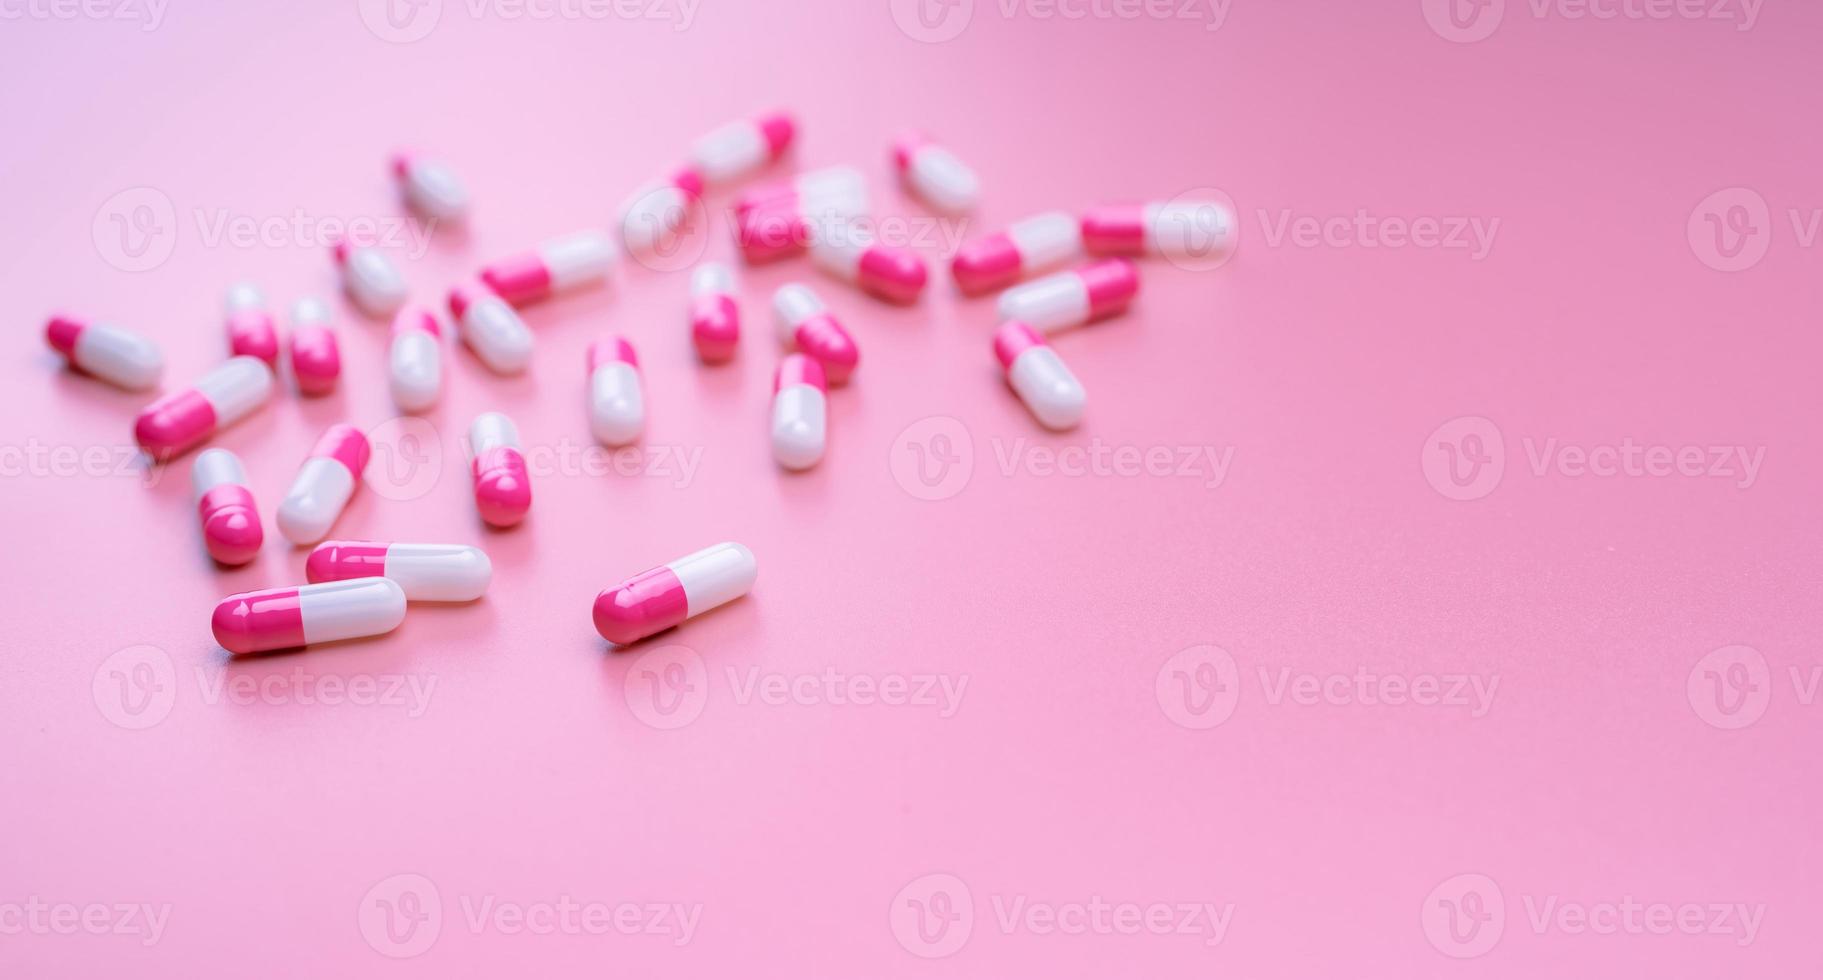 Rosa-weiße antibiotische Kapselpille auf rosafarbenem Hintergrund. Apothekenbanner. Konzept der Antibiotikaresistenz. Pillen und Liebeskonzept. Pharmaindustrie. Apotheken- und Krankenversicherungsgeschäft. foto